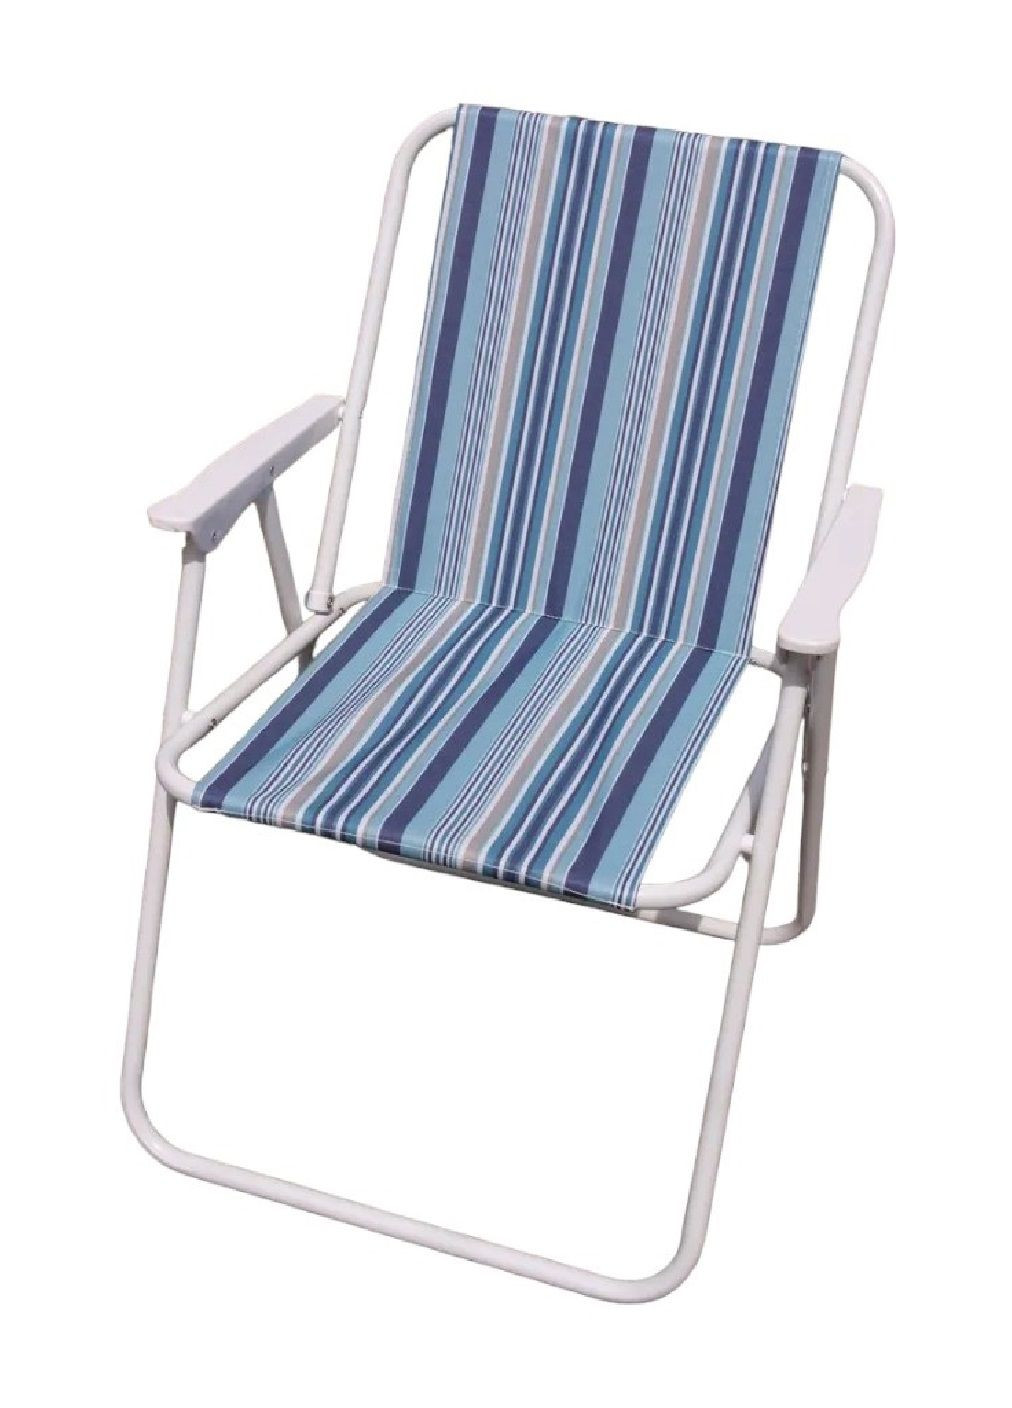 Кресло стул складной для походов рыбалки туризма кемпинга отдыха на природе 52х48х76 см (476901-Prob) Сине-голубое Unbranded (292324320)